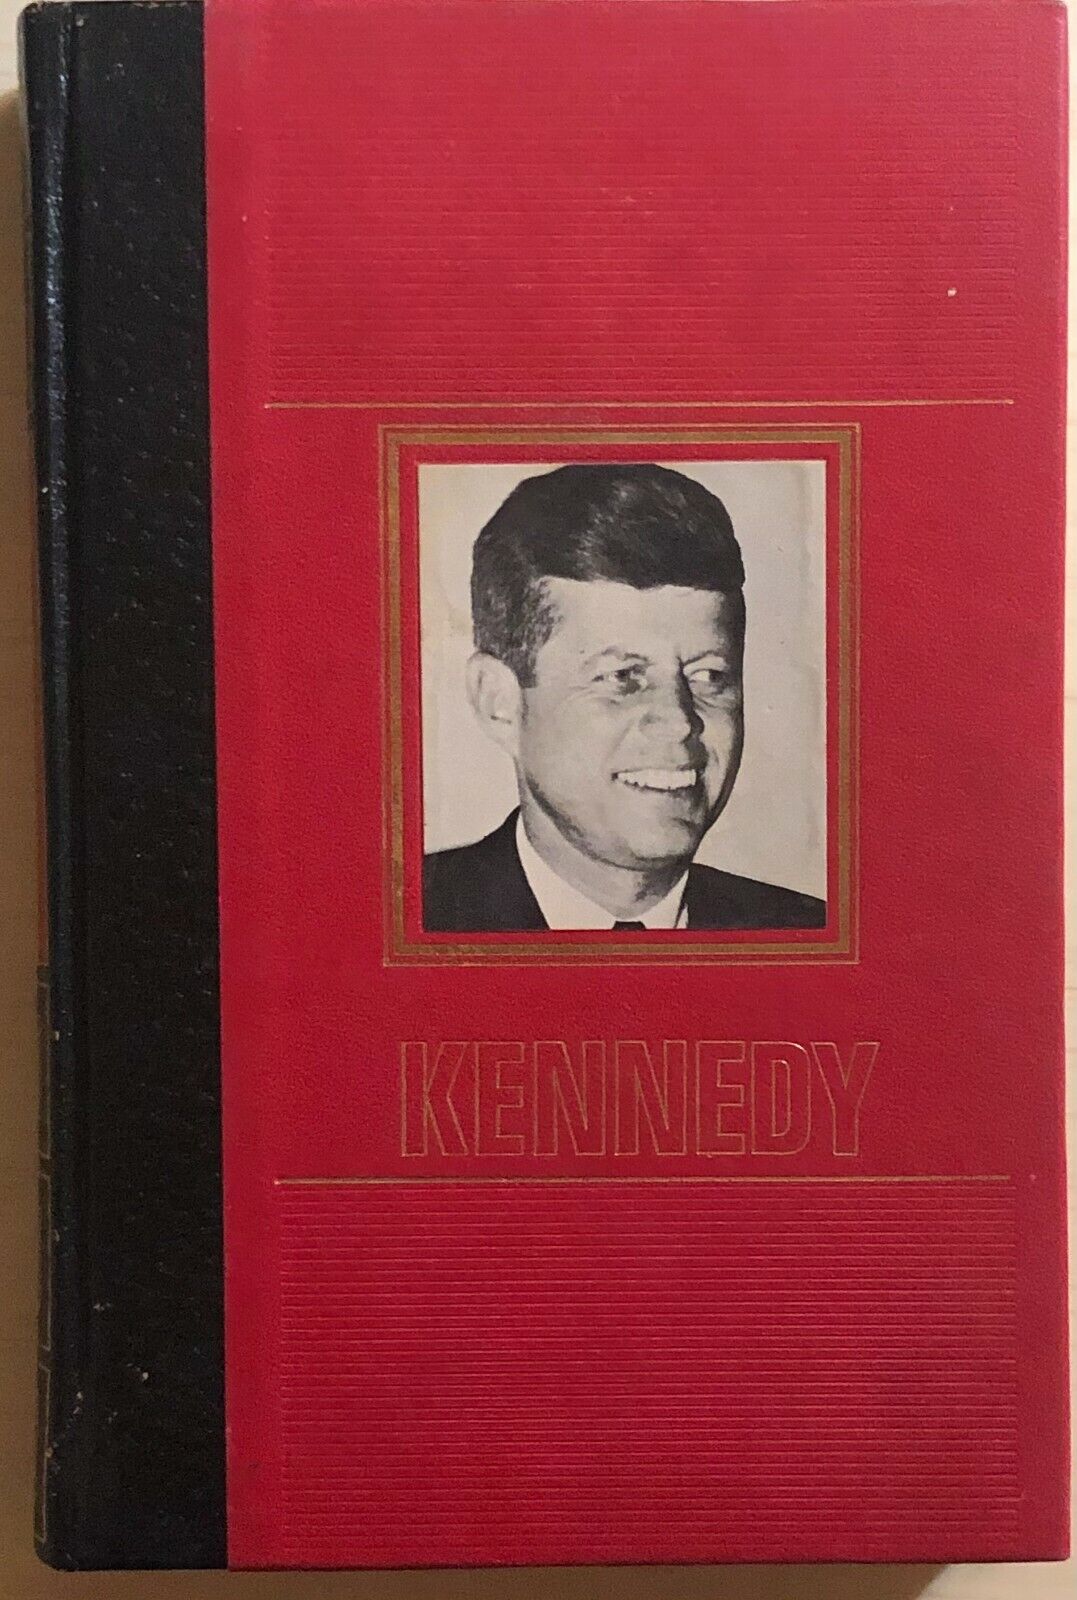 Il destino drammatico dei Kennedy di Aa.vv., 1971, Edizioni Di Cr?mille